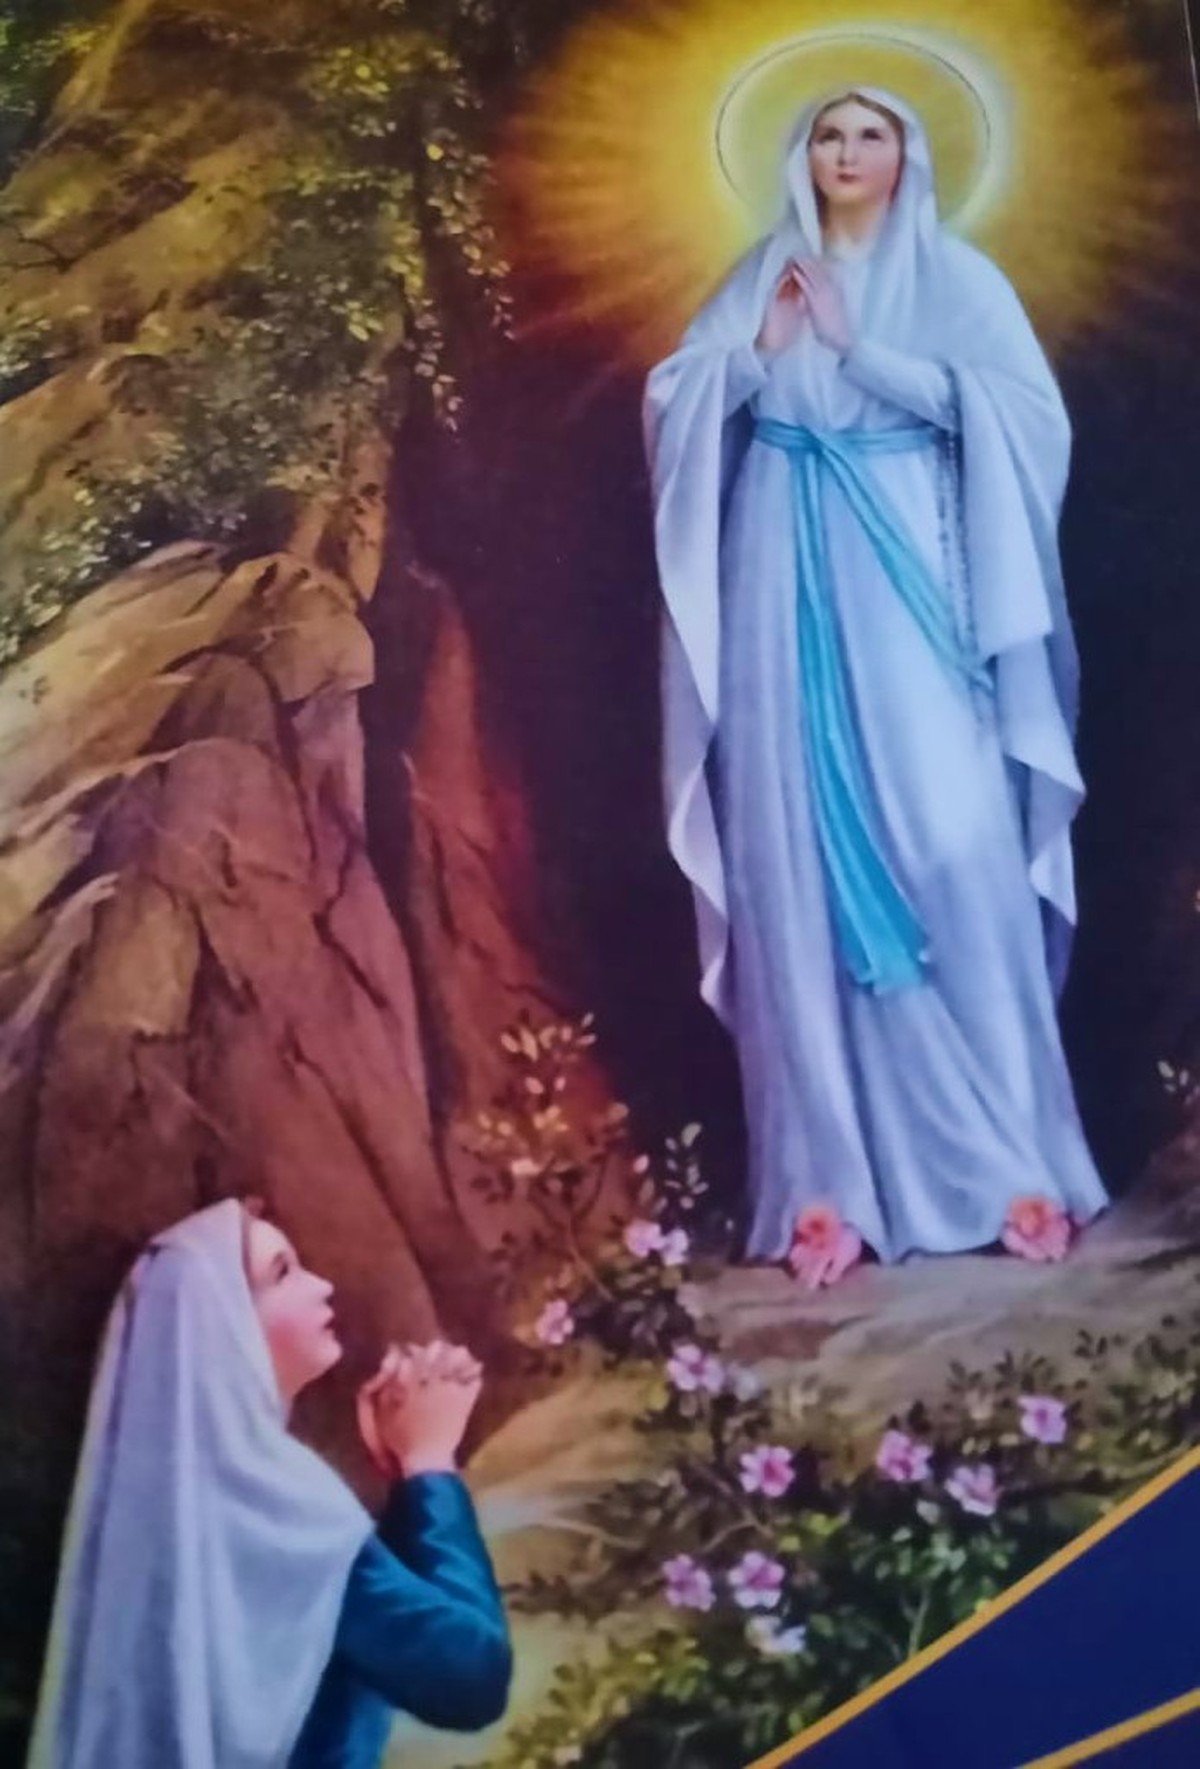 Dia de Nossa Senhora de Lourdes: Oração e mensagem para data | Saúde  Bragança Paulista | G1